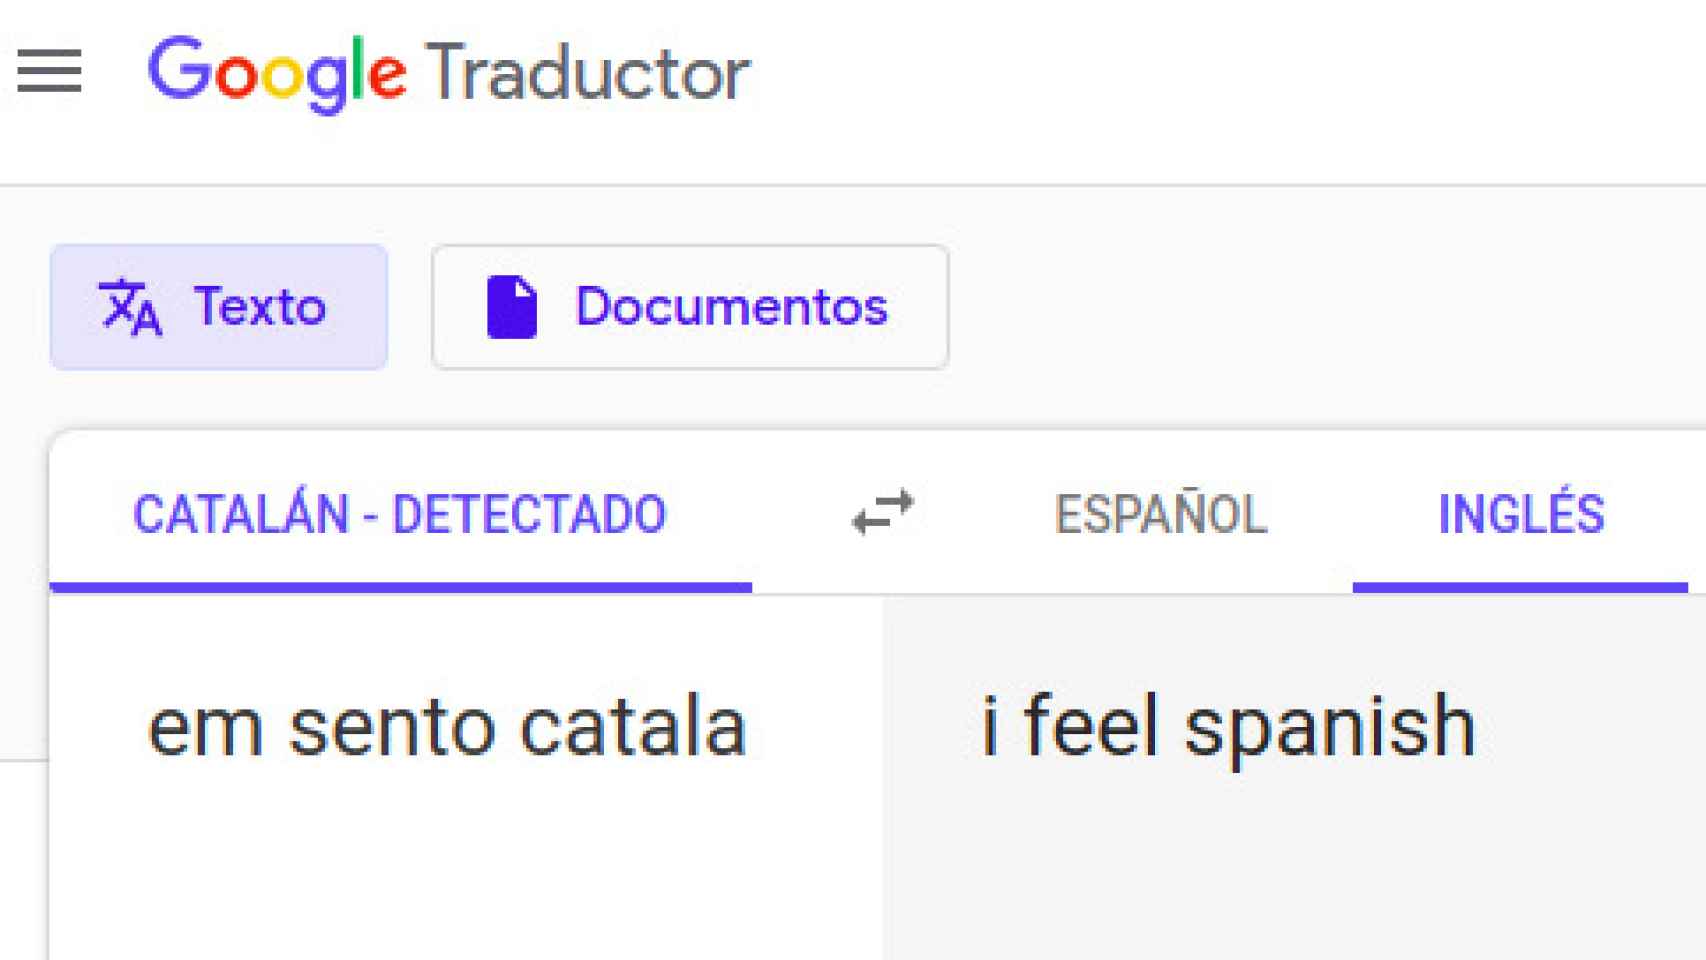 Este es el resultado de la traducción de Google